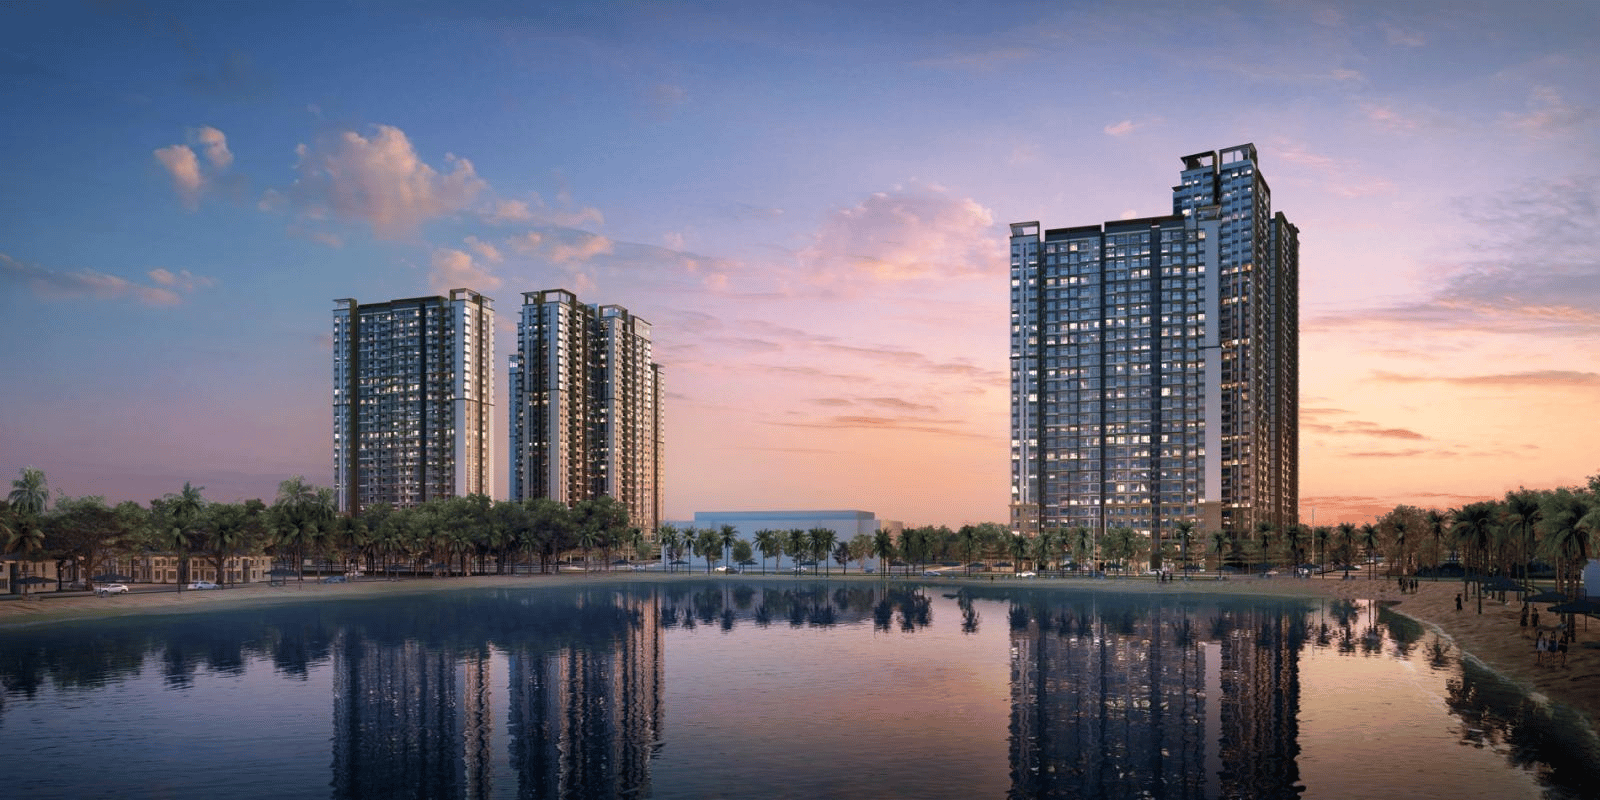 Giá căn hộ chung cư huyện Gia Lâm diện tích 100 - 150m2 đang bán bao nhiêu tiền 1m2?